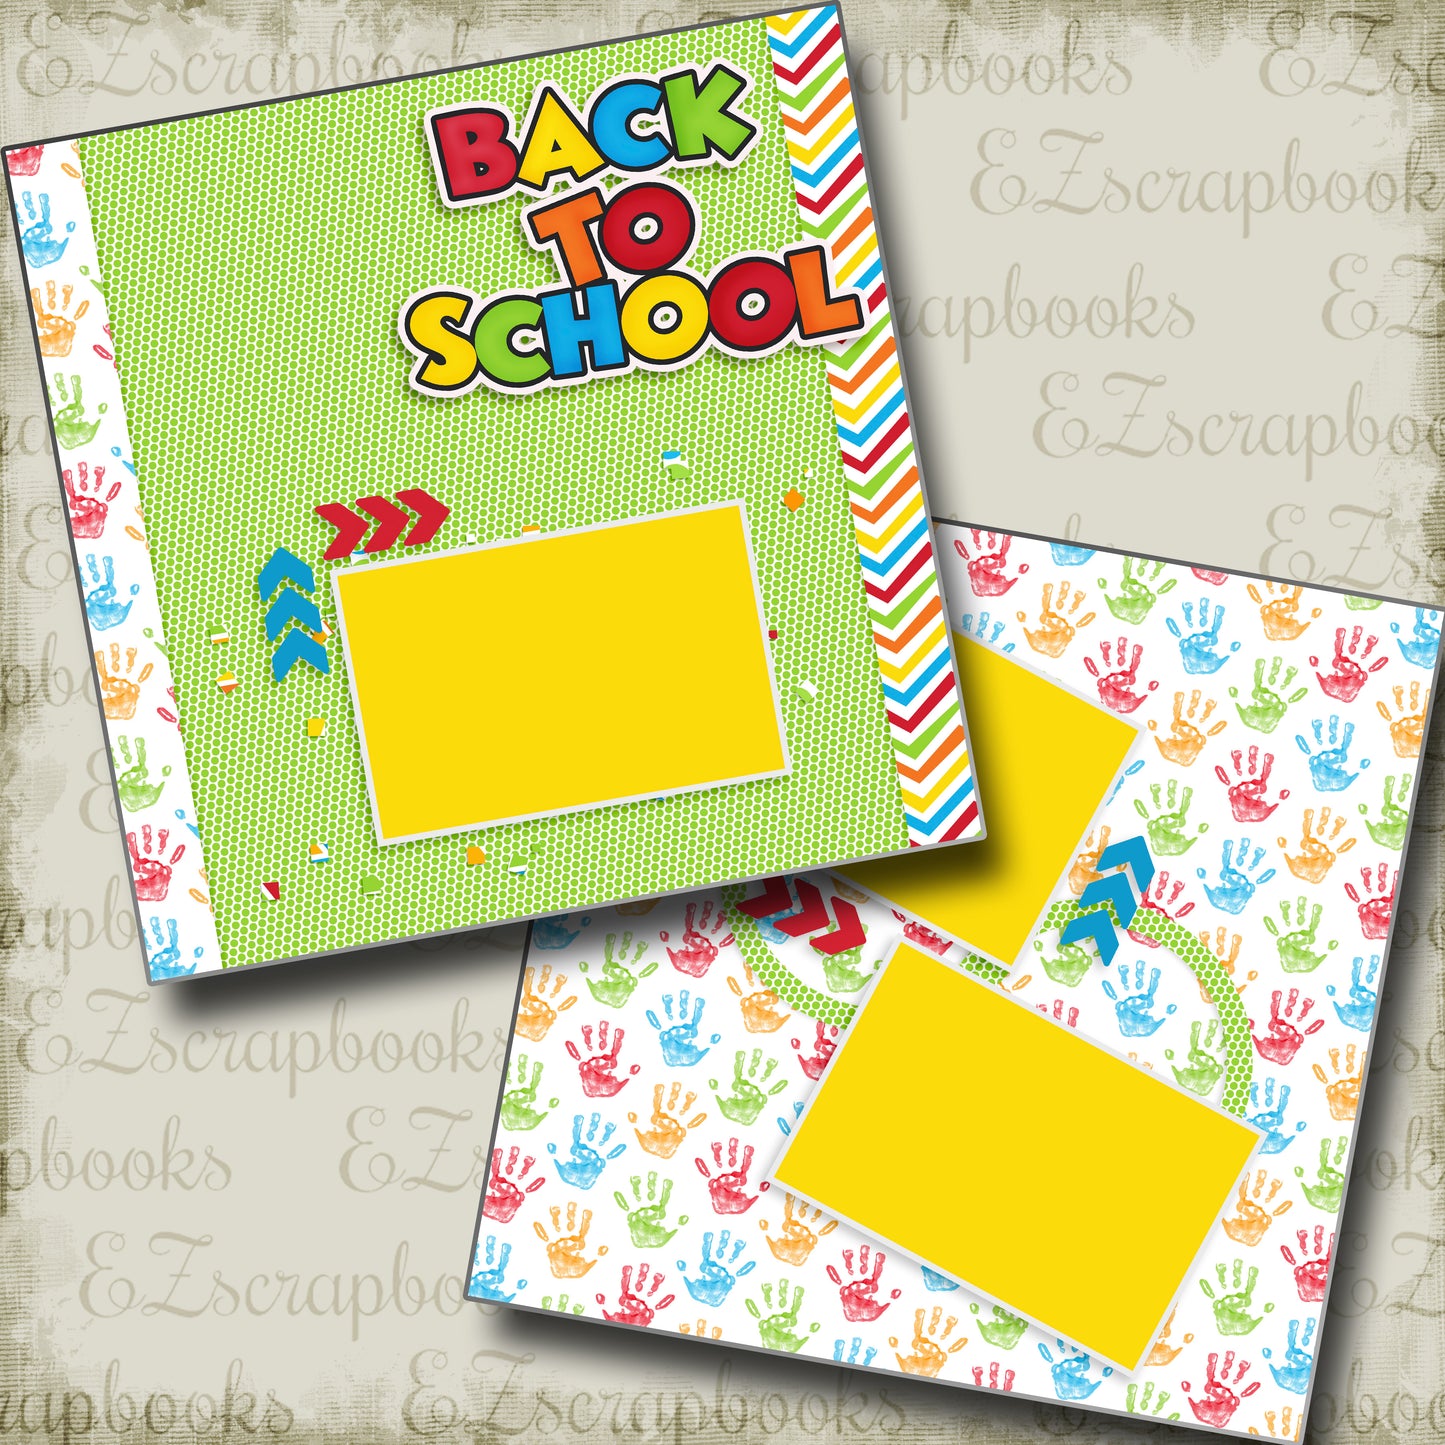 Back To School - 4910 - EZscrapbooks Scrapbook Layouts School